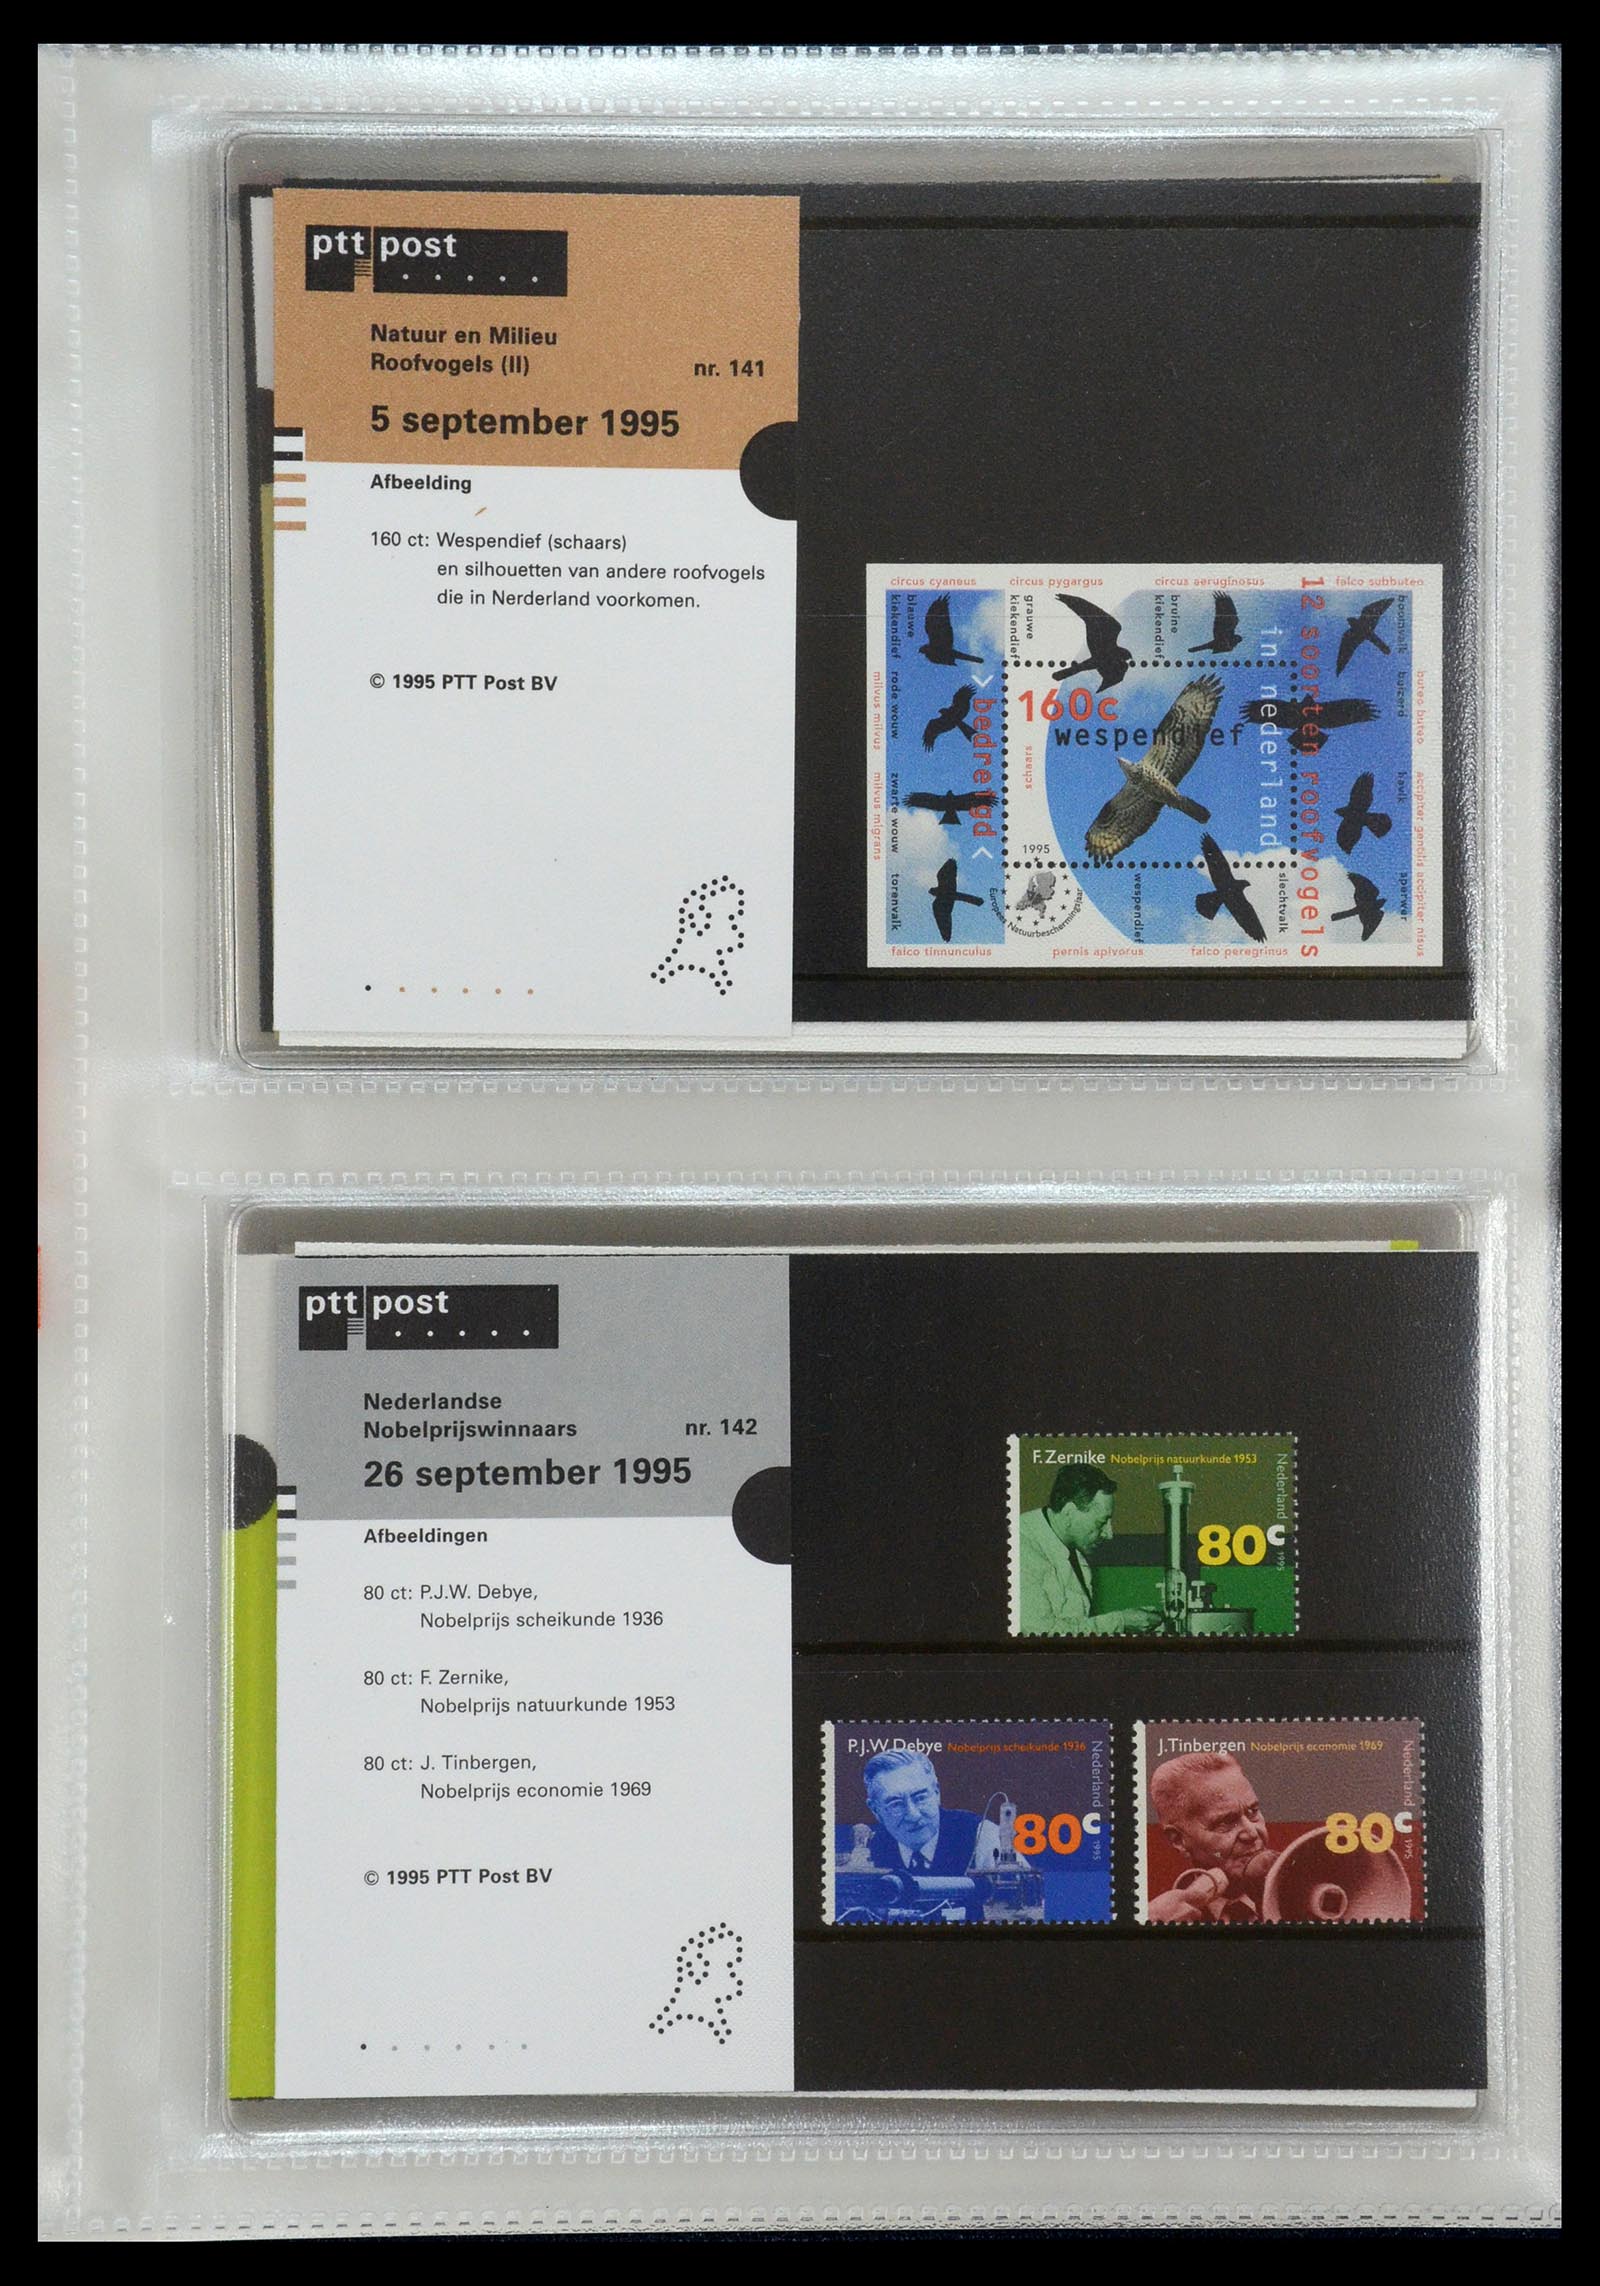 35144 073 - Stamp Collection 35144 Netherlands PTT presentation packs 1982-2021!